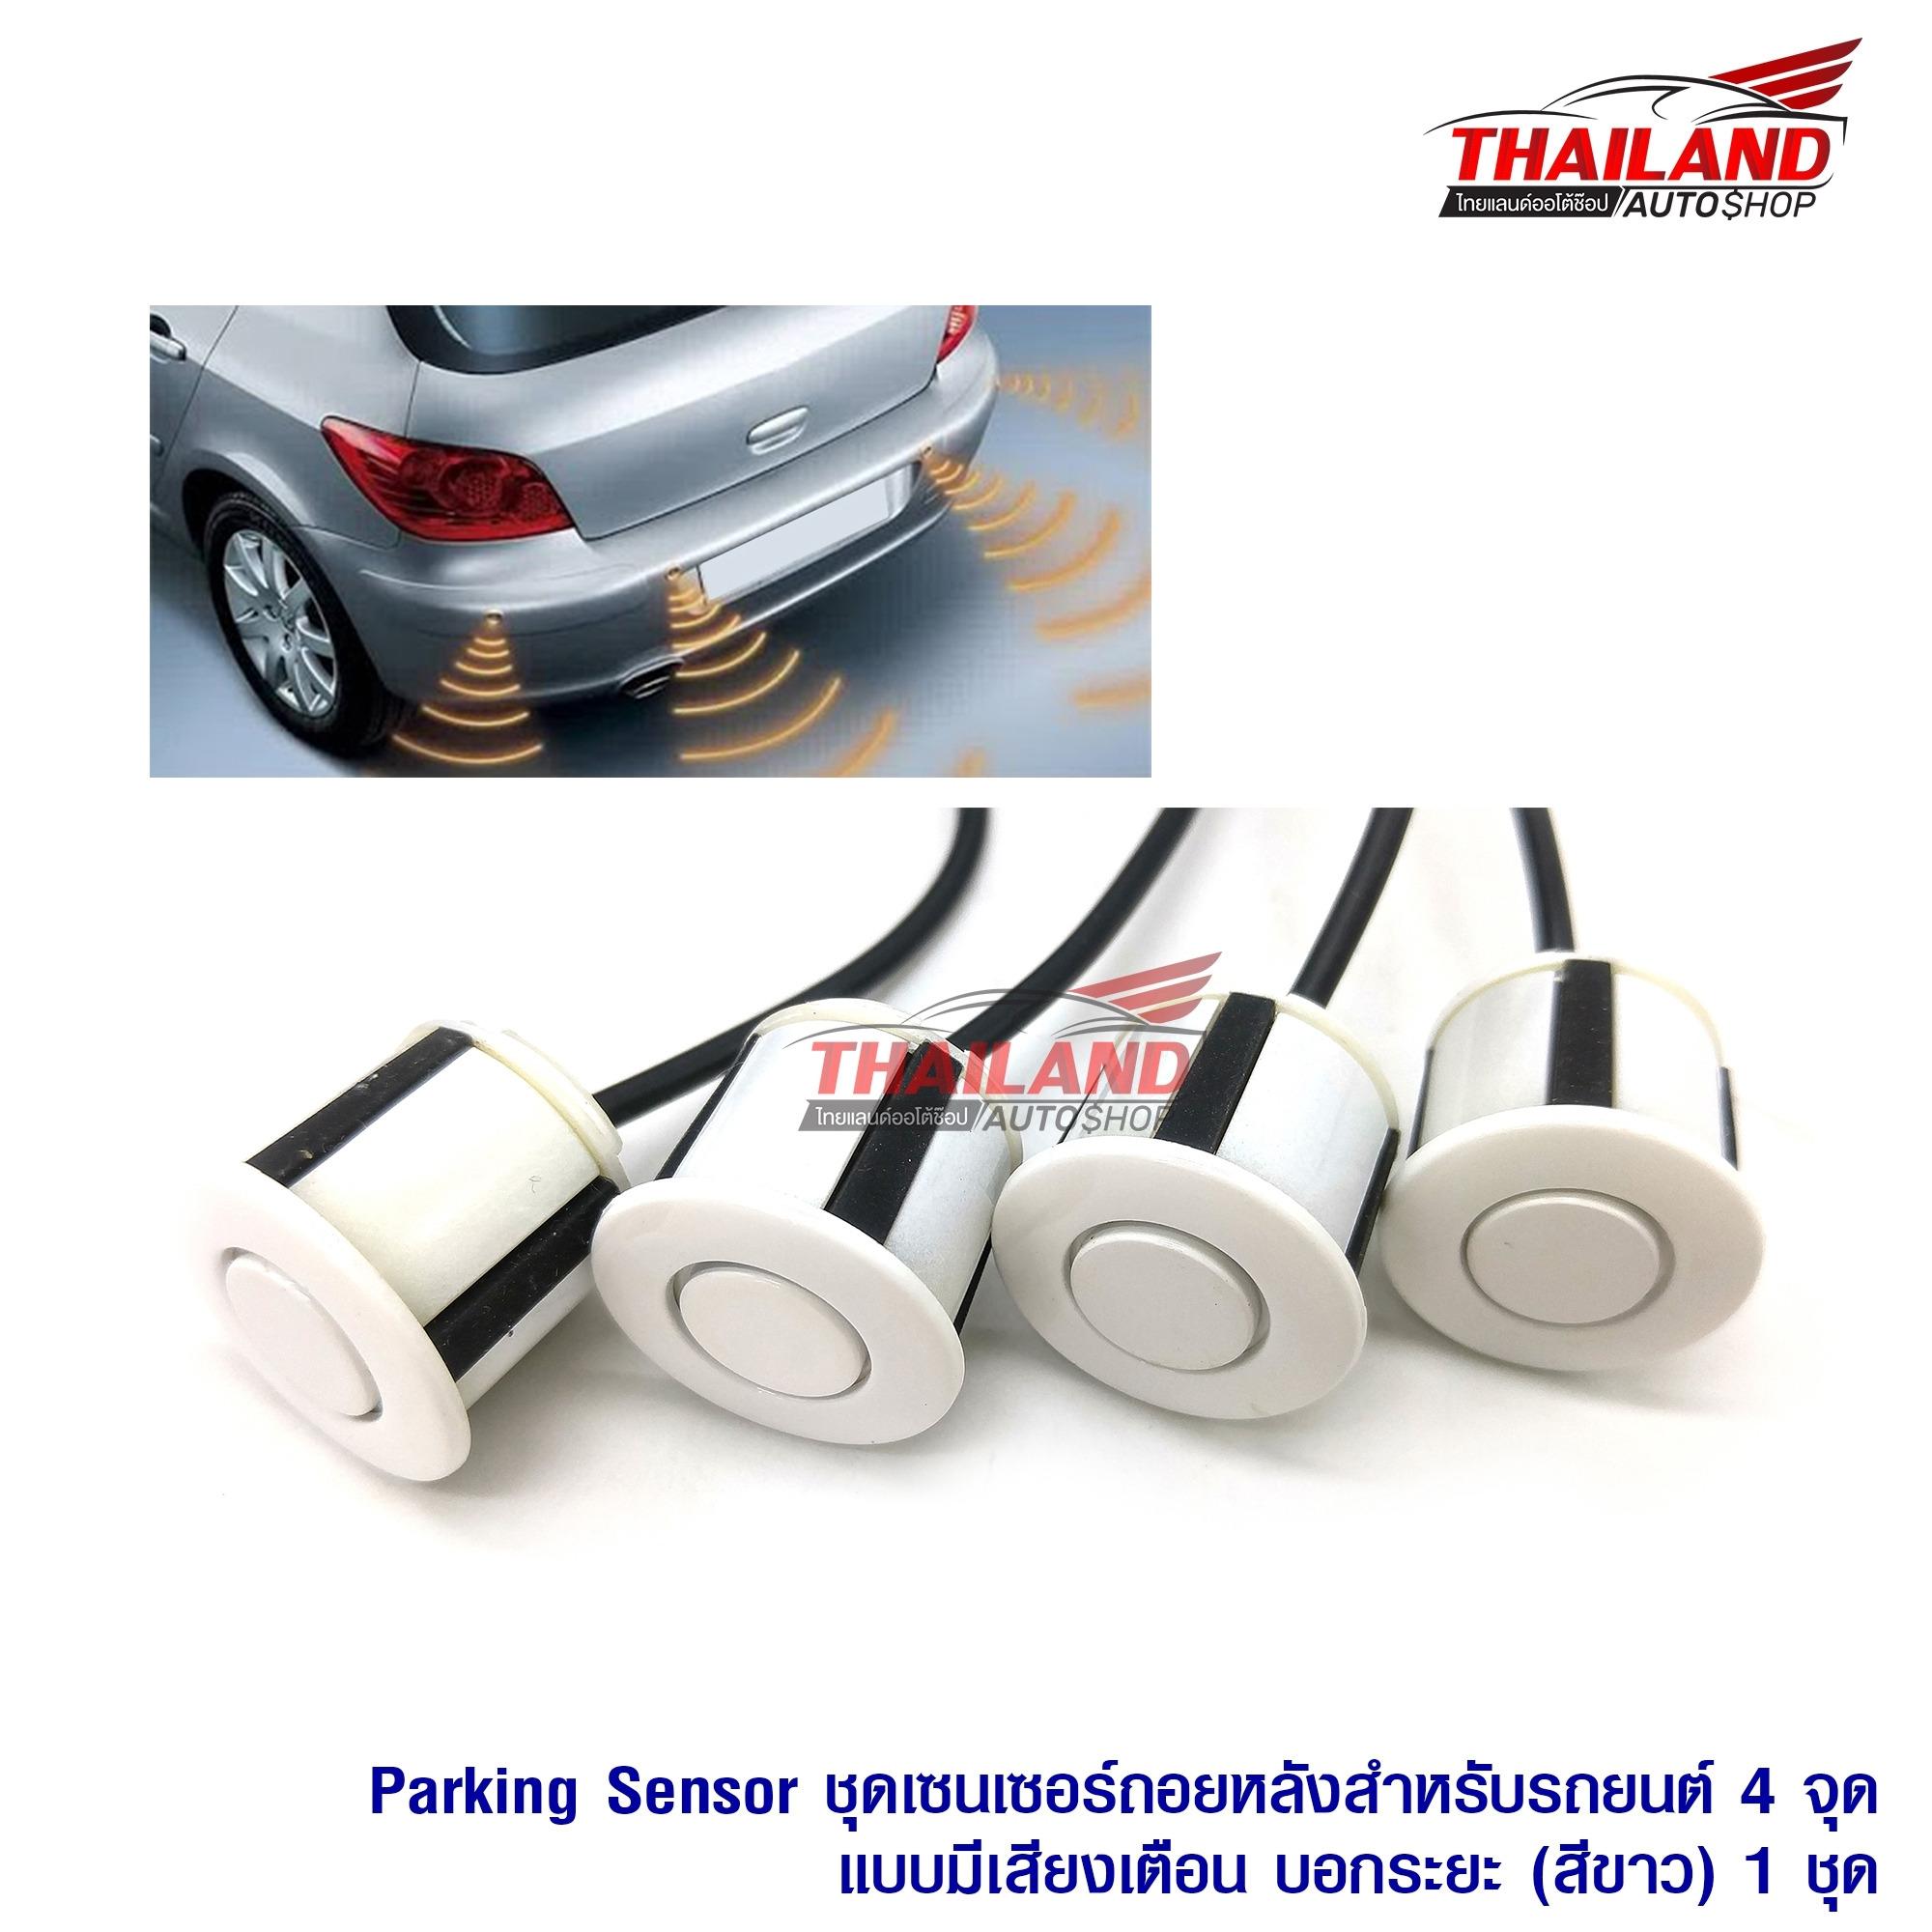 เซ็นเซอร์ถอยหลังสำหรับรถยนต์ 4 จุดแบบมีเฉพาะเสียงเตือน Parking Sensor  (สีขาว)